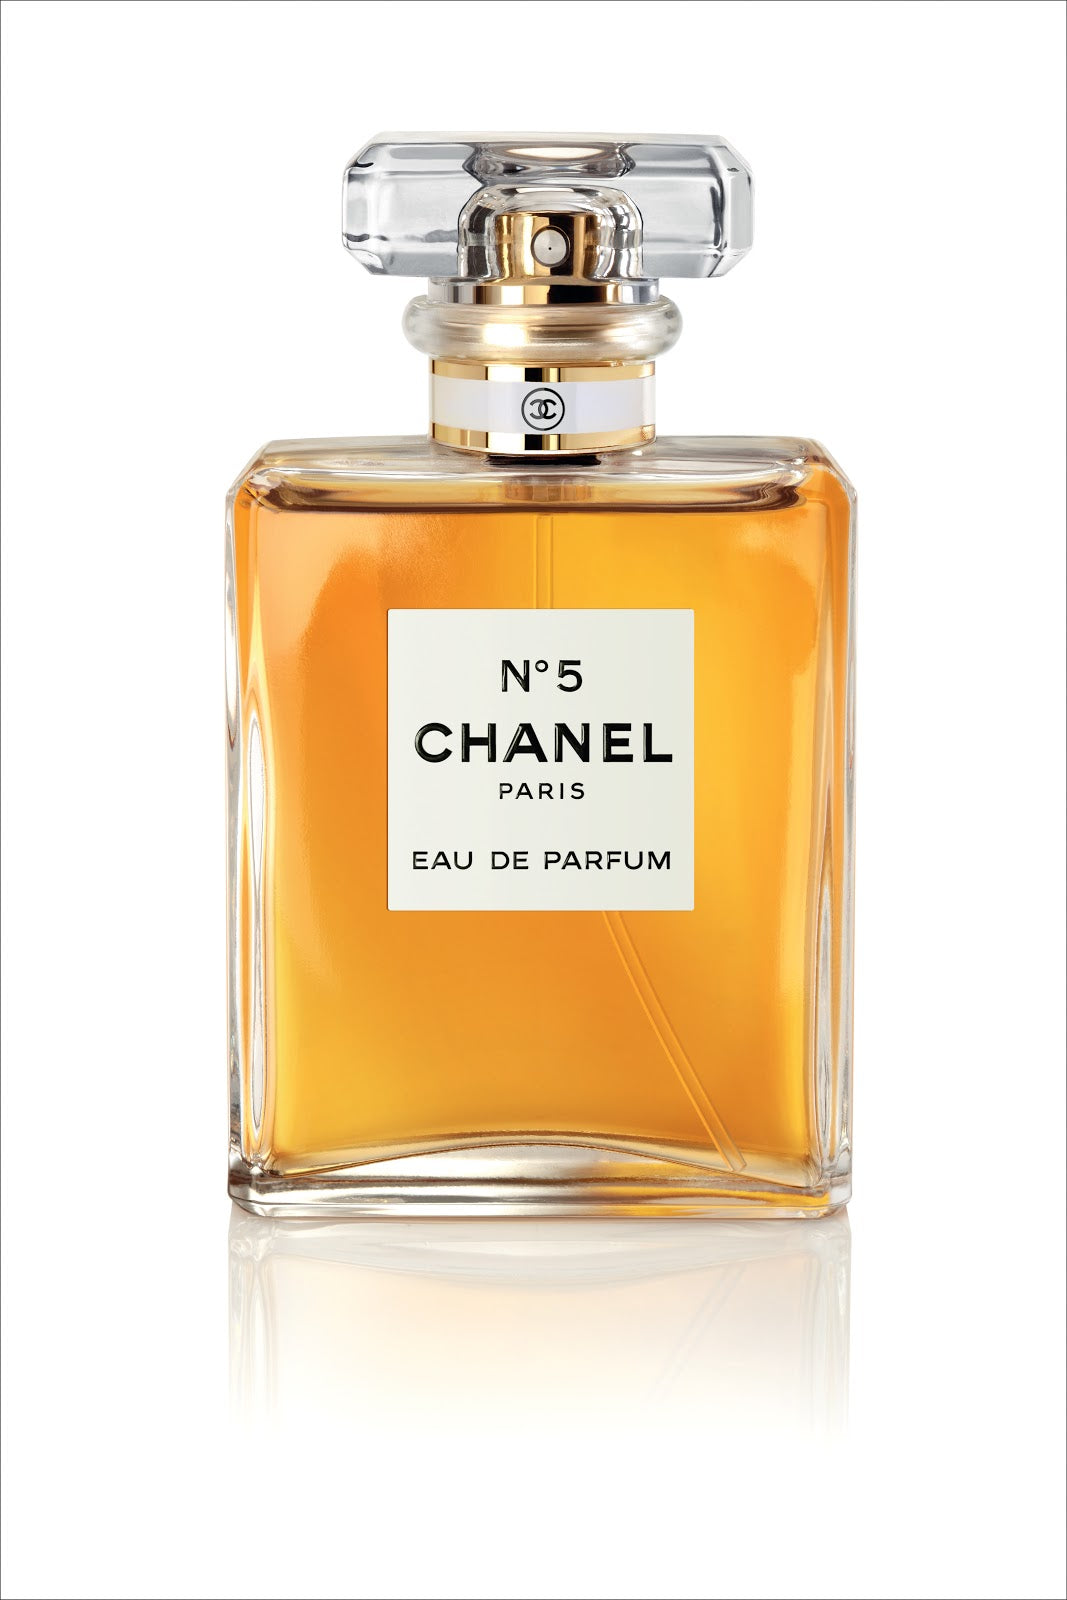 Best Chanel Perfumes UAE – Perfume Dubai